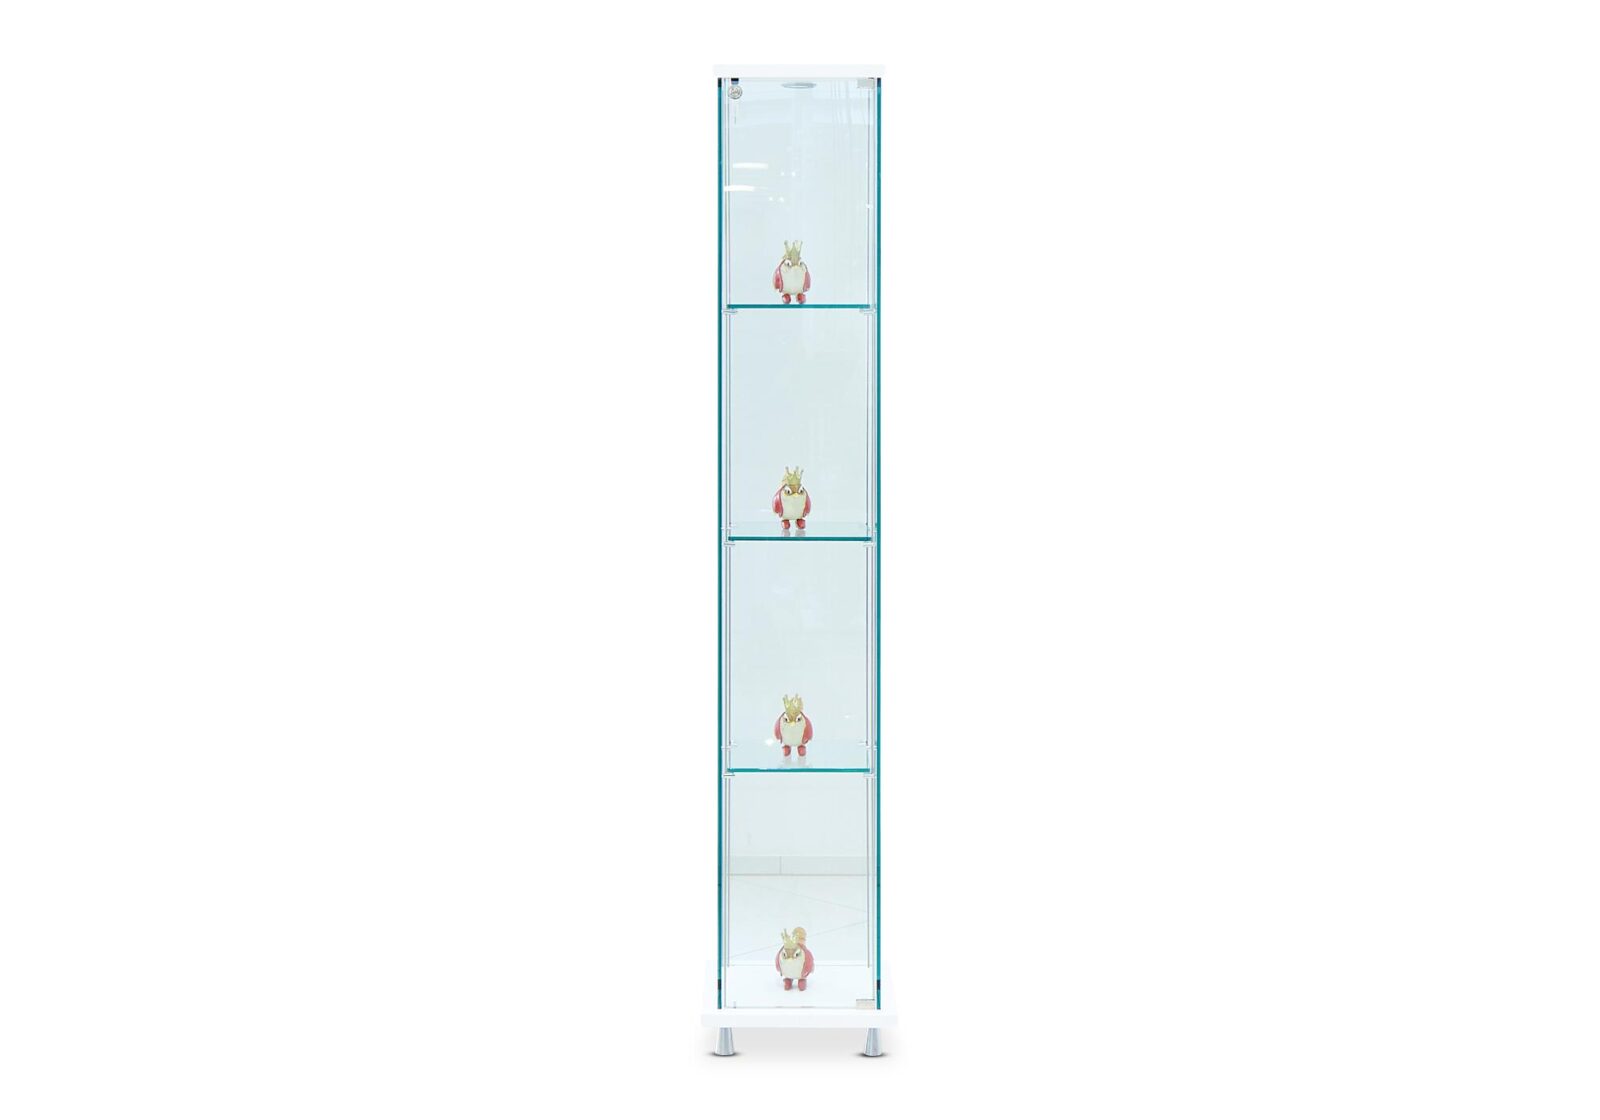 Vitrine Como mit Glastablaren. Klarglas mit Halogenlicht 35 T 35 H 178 cm. Erhältlich bei Möbel Gallati.